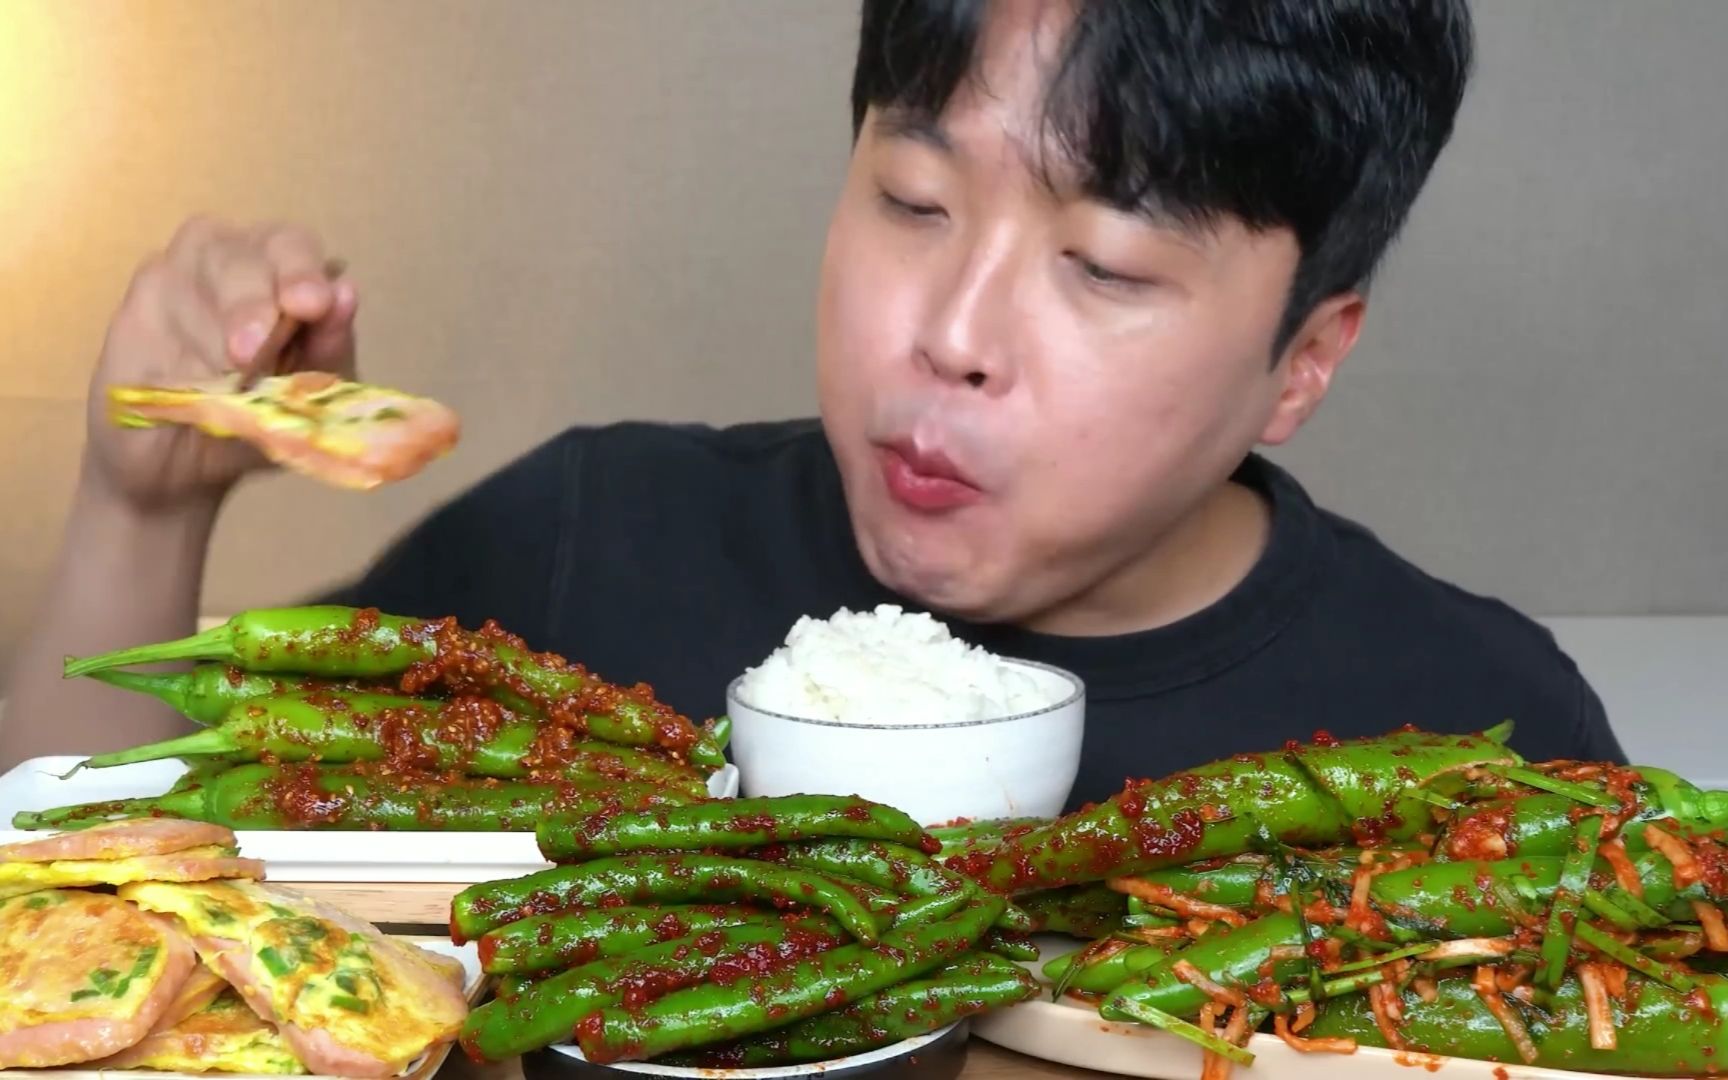 [buddle] 最喜欢看寒酸哥吃辣椒了！！！